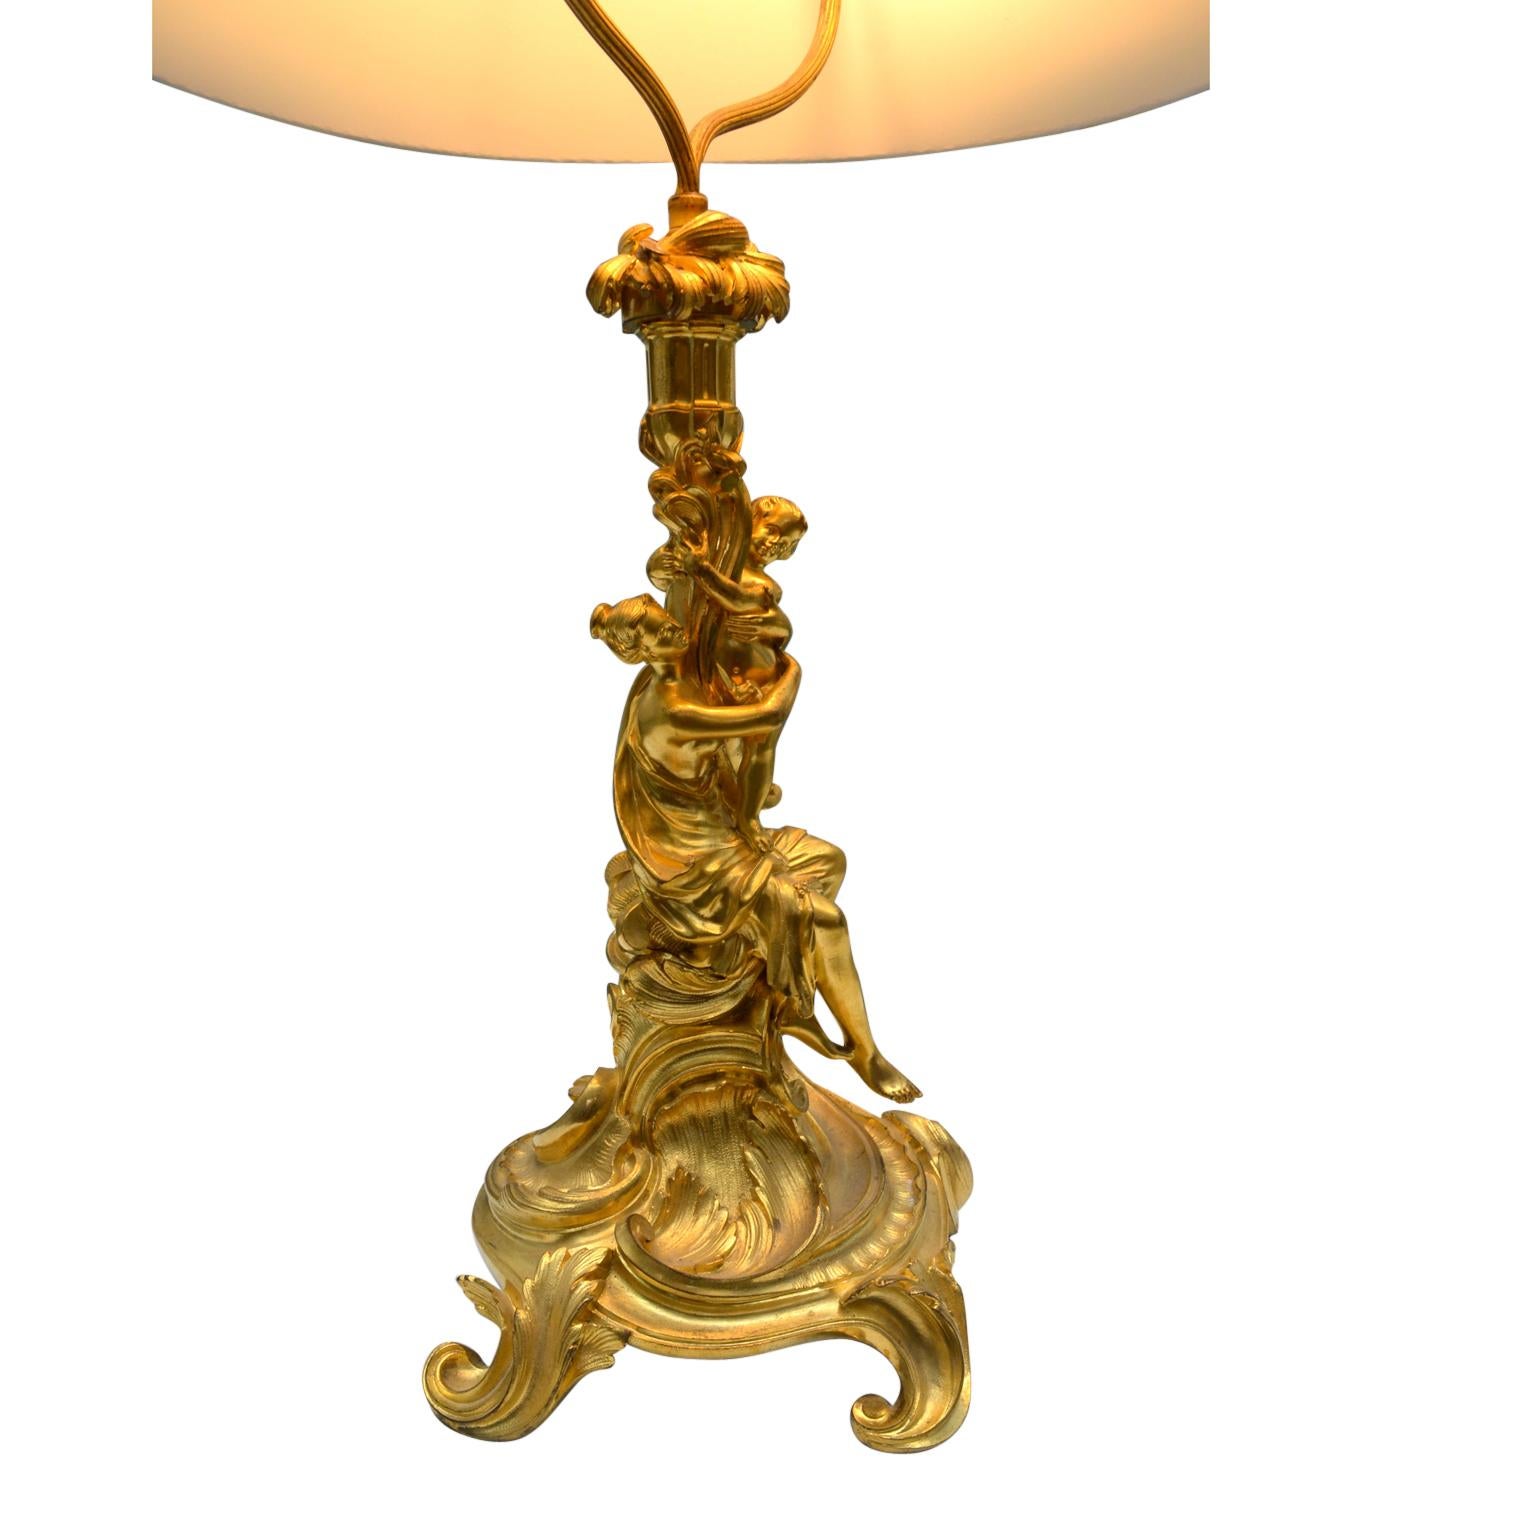 Lampe figurative française en bronze doré représentant une dame debout, drapée de façon classique, avec un Cupidon dans les bras, qui tient en haut une corne d'abondance contenant la douille ; le tout reposant sur une base circulaire de style rococo.